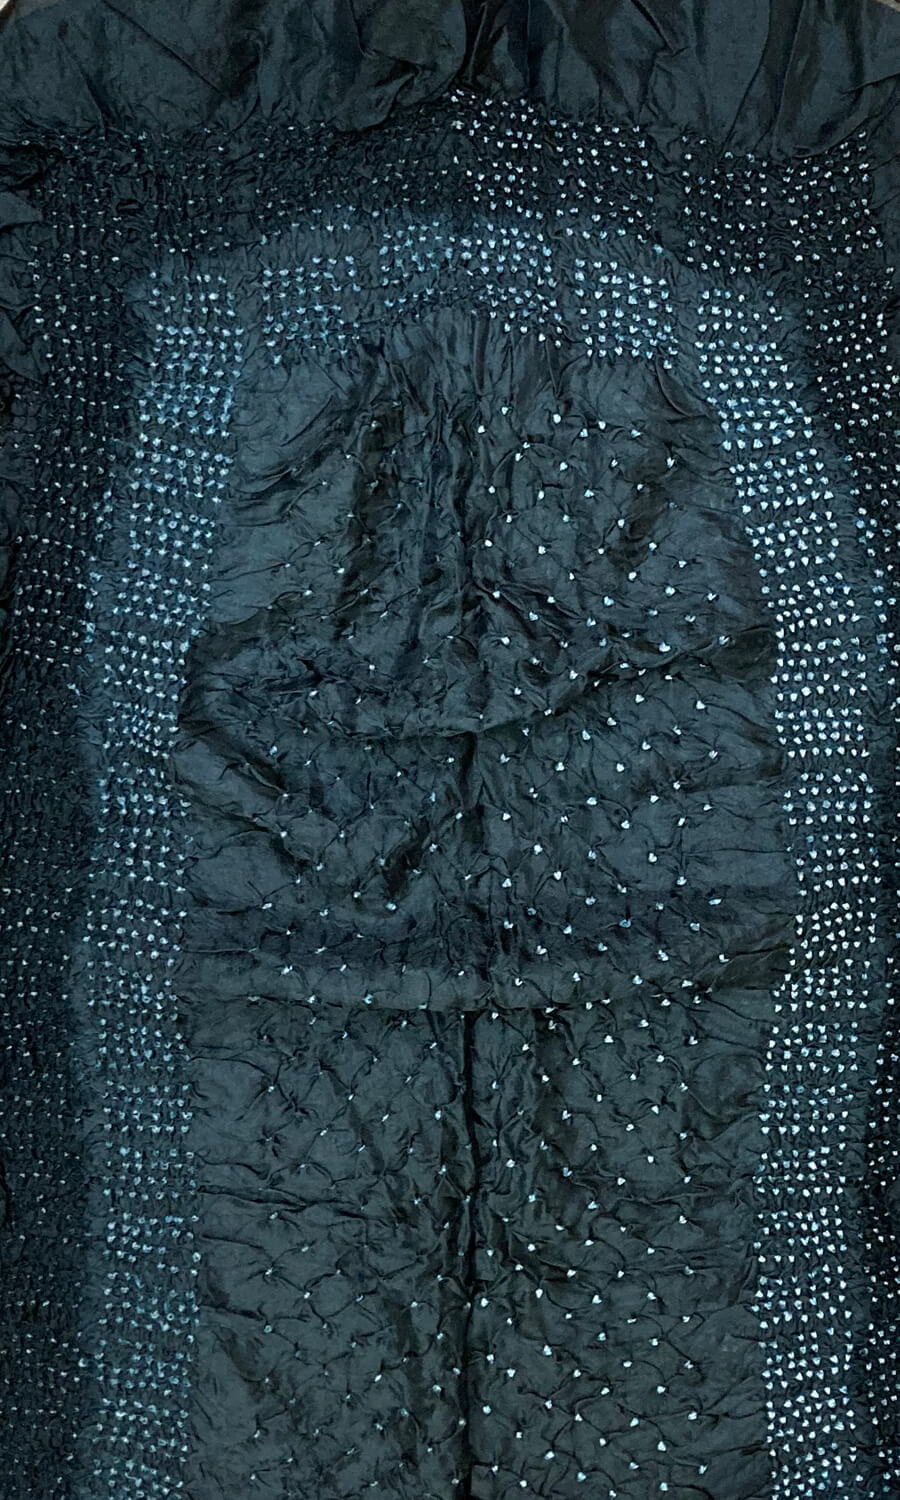 Mohini - schmaler Schal aus reiner Seide